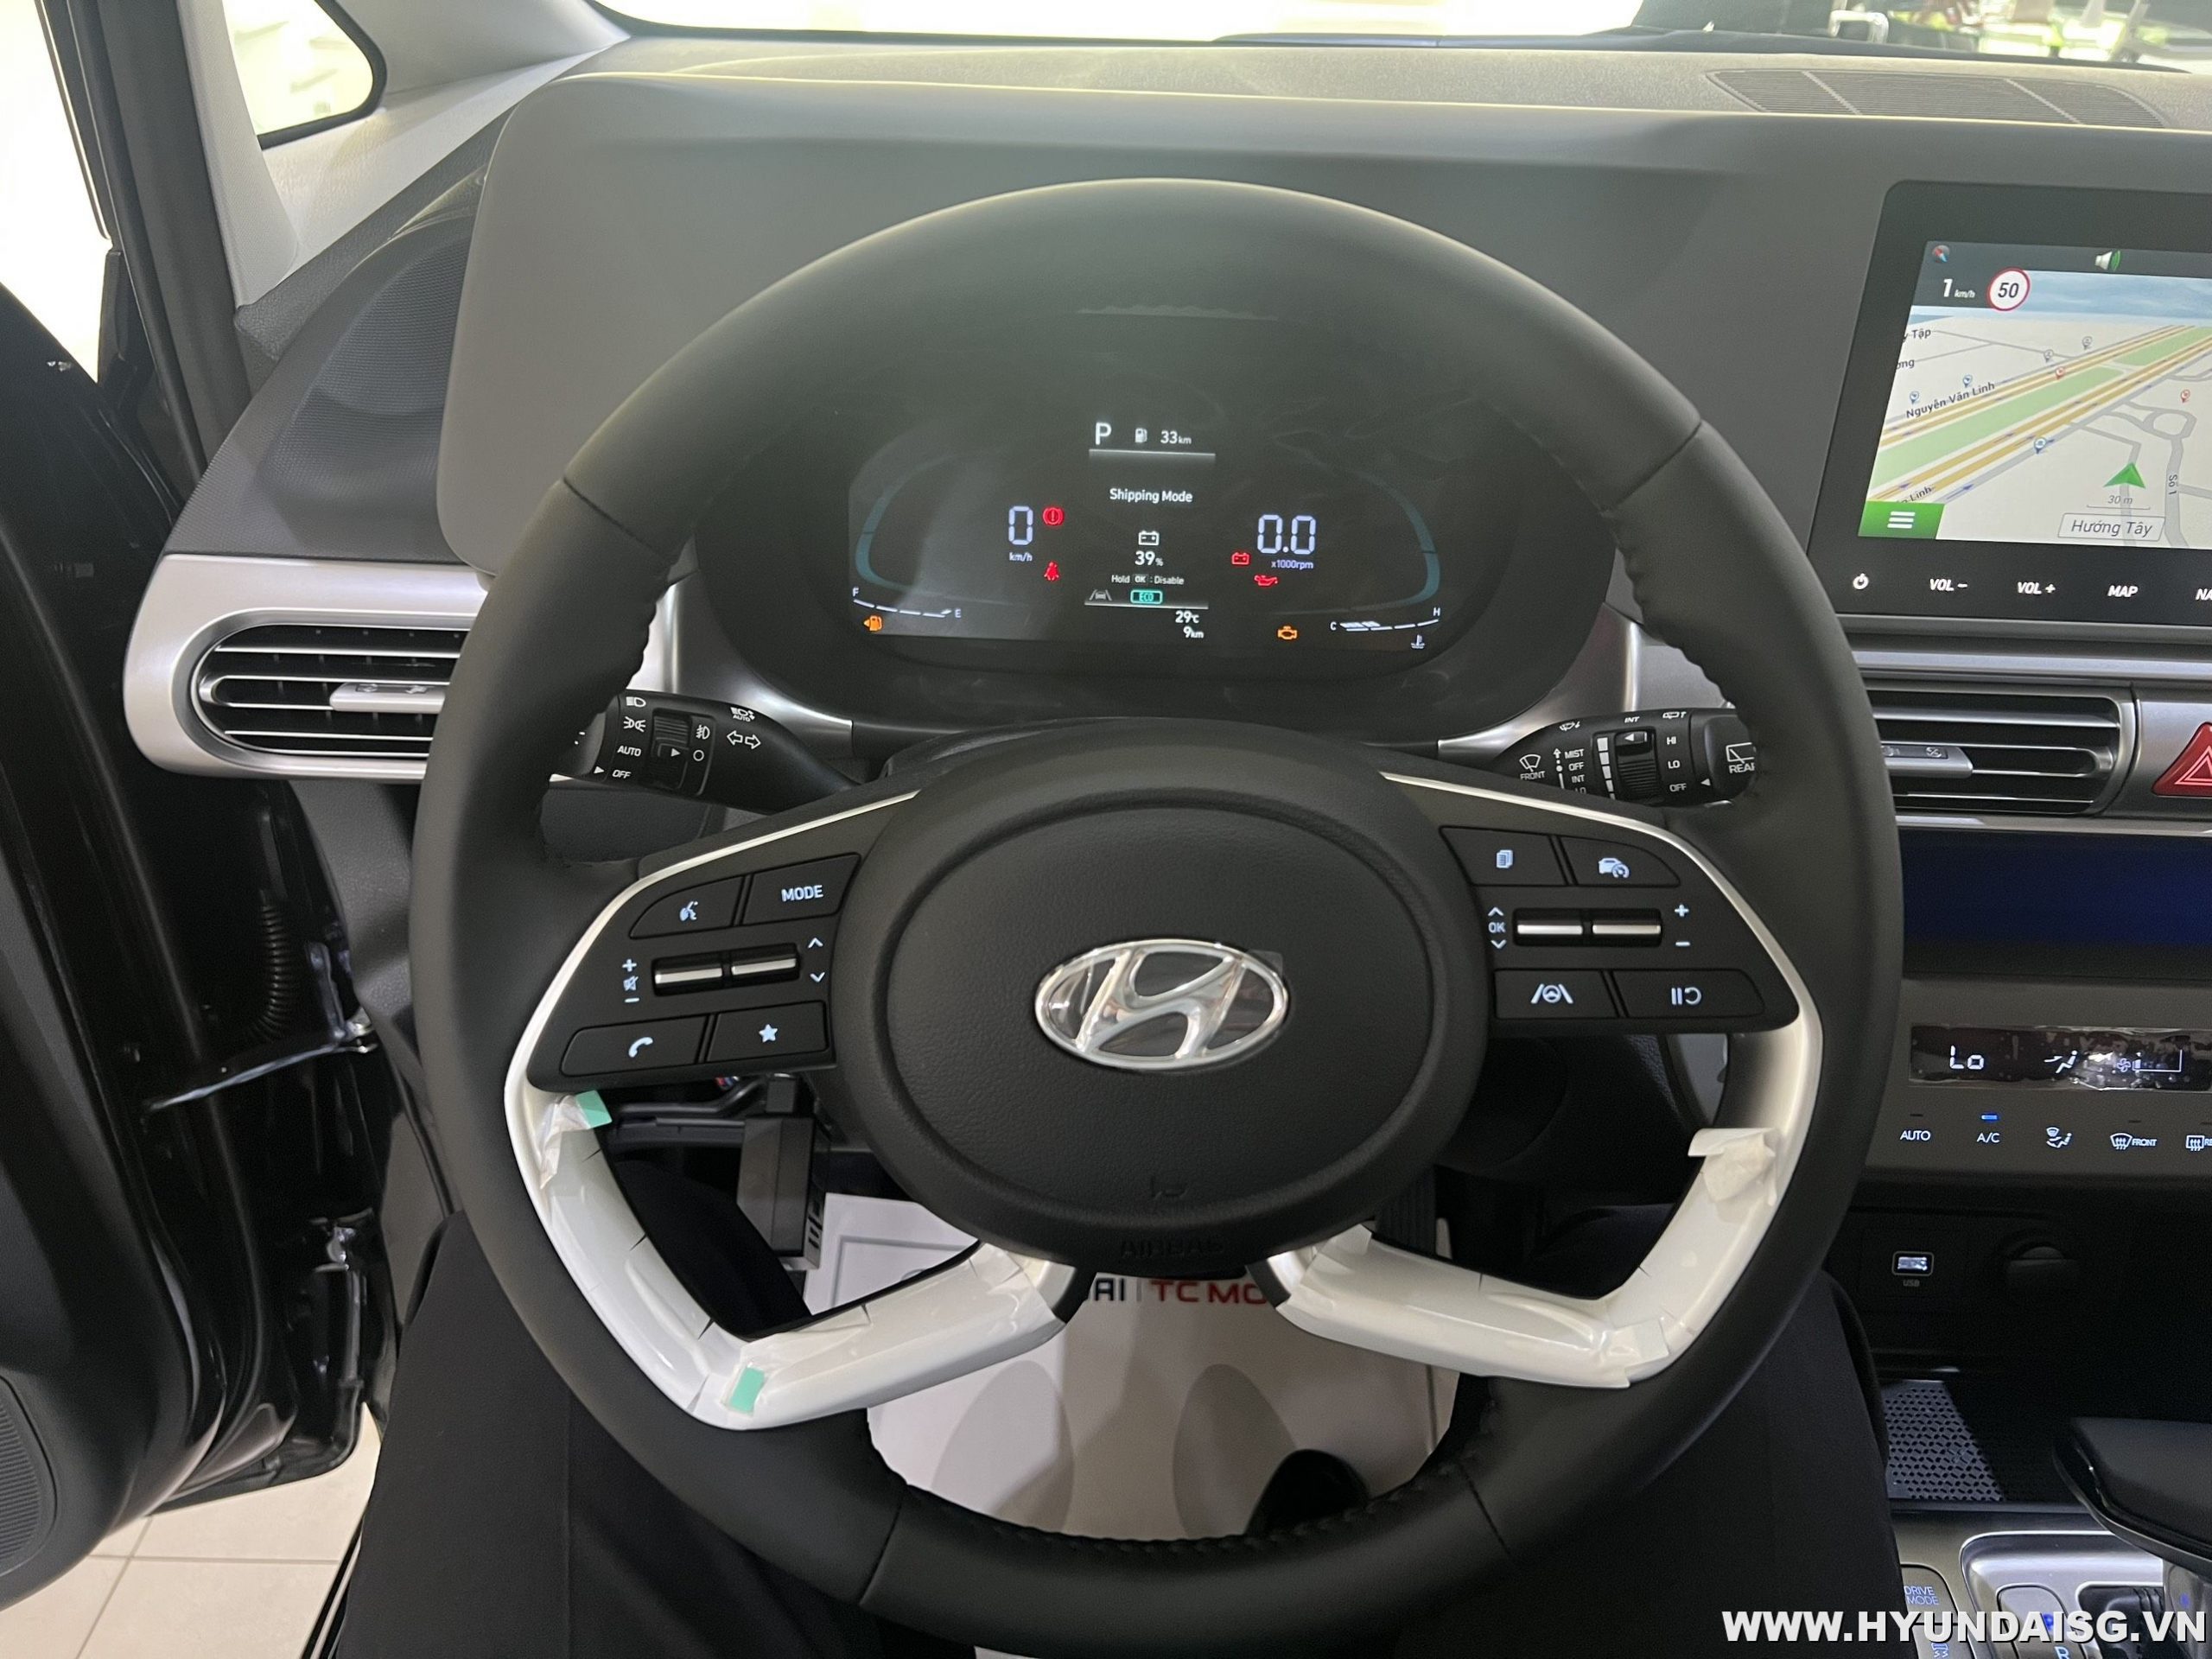 Hyundai Stargazer màu đen bản cao cấp sẽ khiến bạn say đắm ngay từ cái nhìn đầu tiên. Thiết kế sang trọng và hiện đại, hệ thống an toàn và các tính năng thông minh sẽ mang đến cho bạn một trải nghiệm lái xe đỉnh cao. Hãy xem ngay để khám phá thế giới của Hyundai Stargazer.